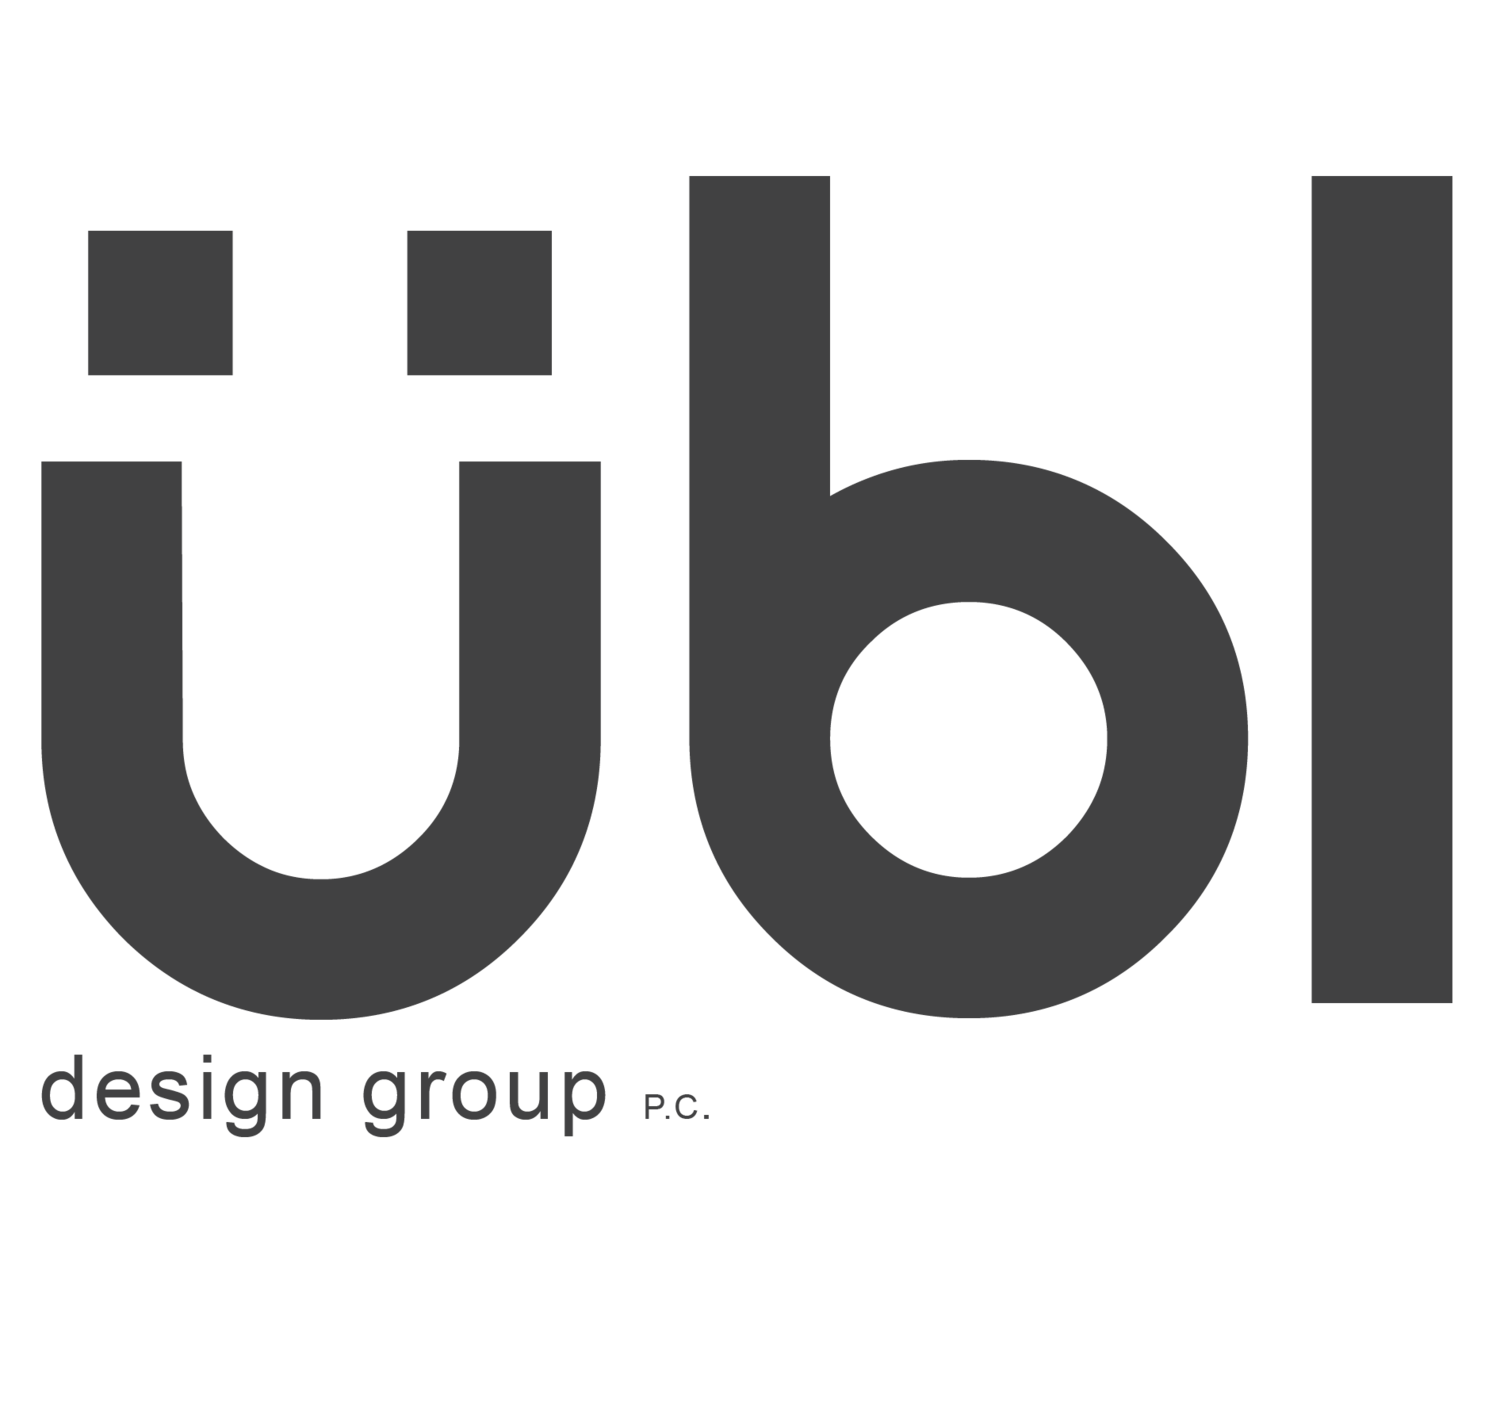 Übl Design Group